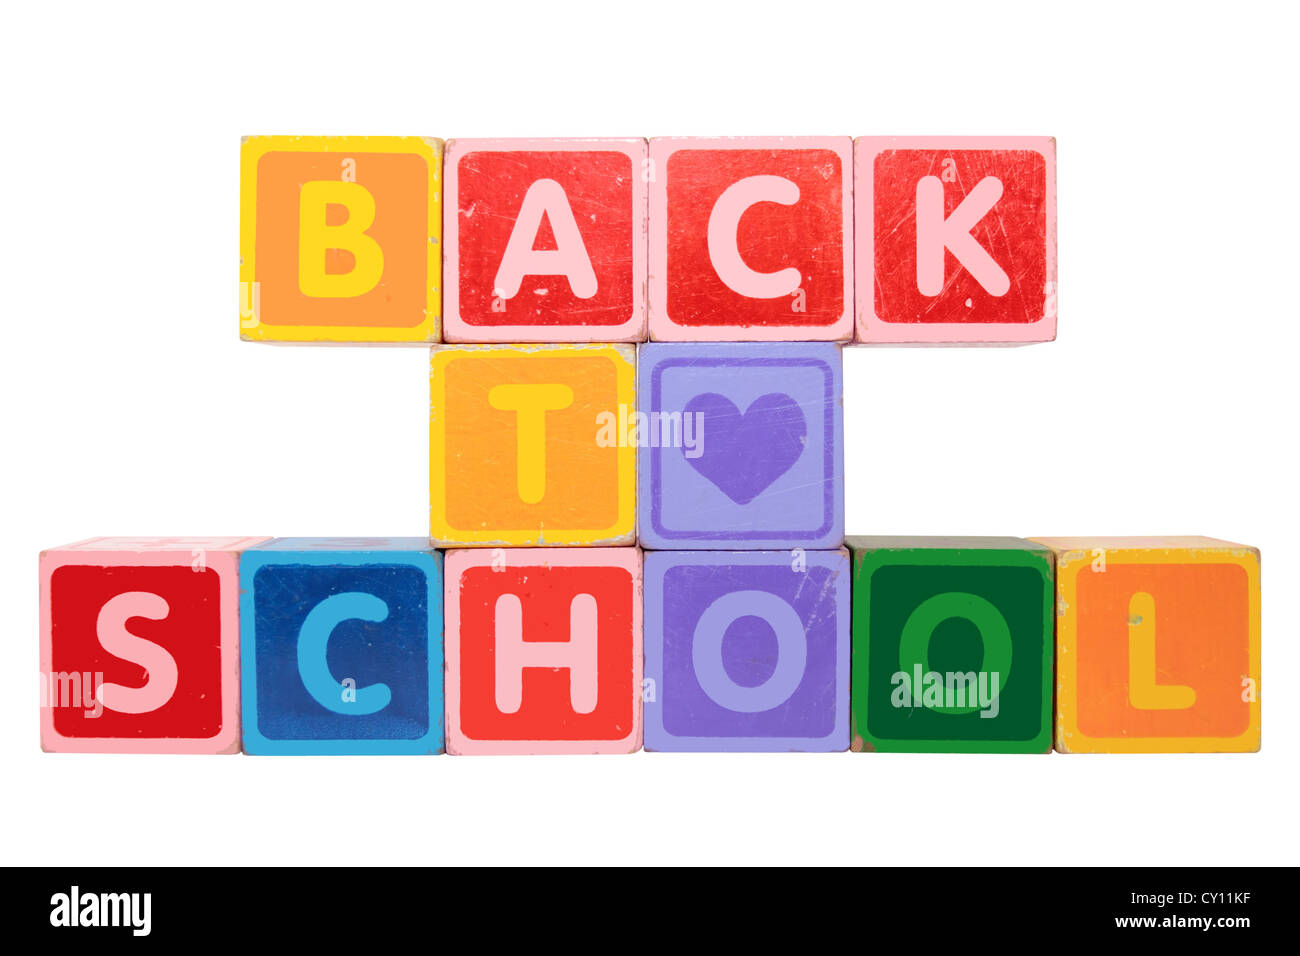 Toy letras que componen el regreso a la escuela contra un fondo blanco con trazado de recorte Foto de stock